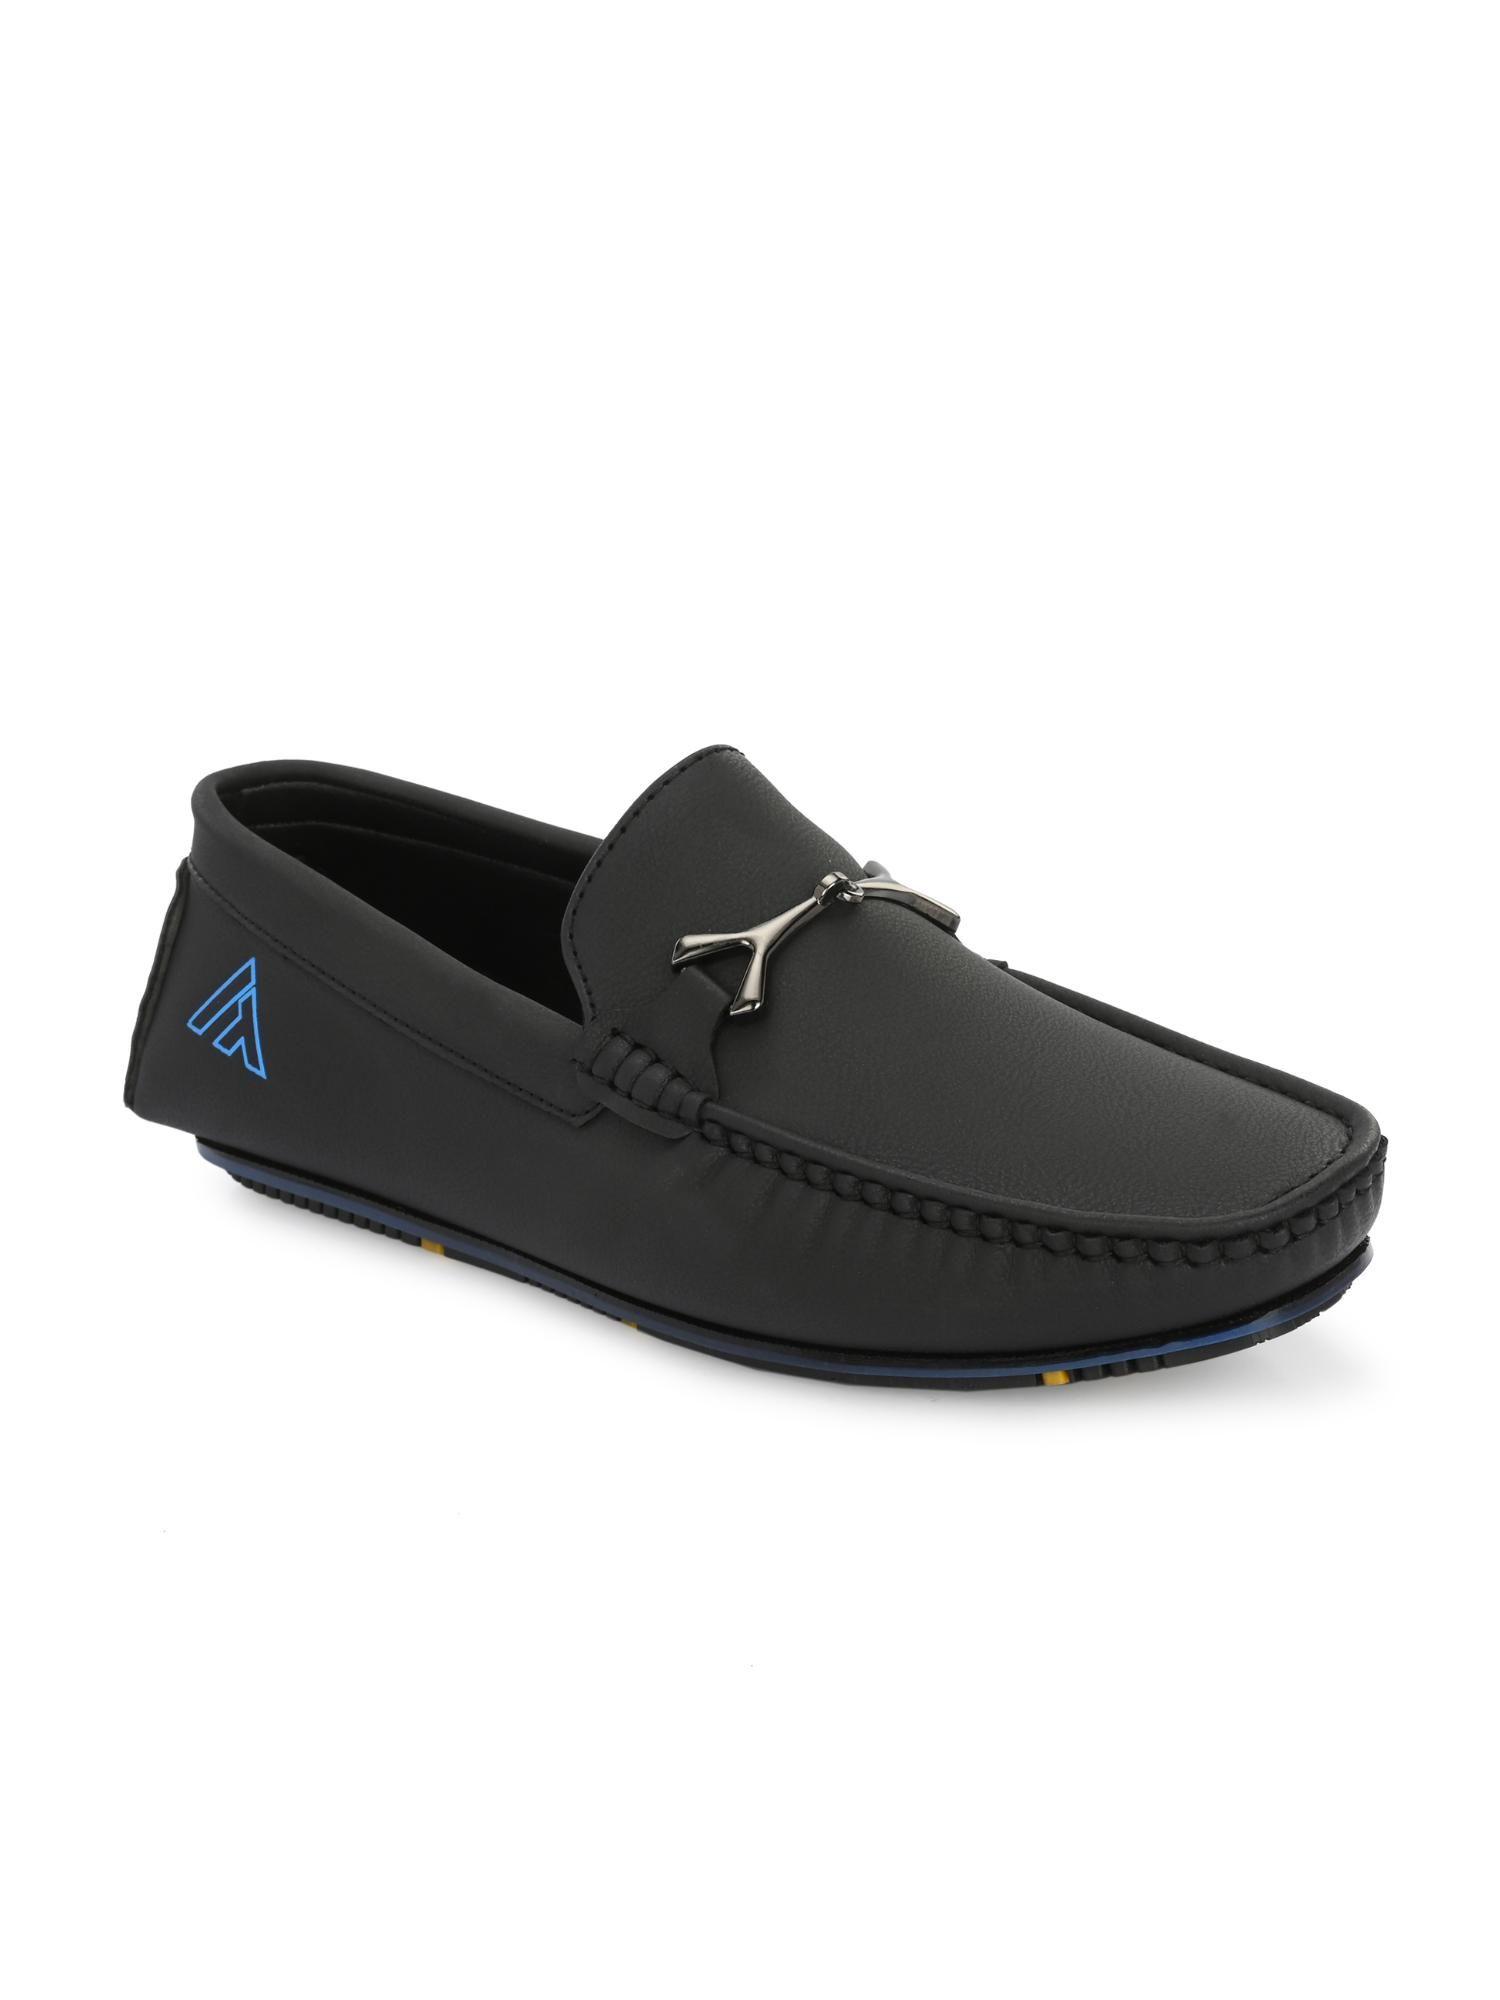 trendy-silicon-muti-coloured-anti-slip-714-vibrant-black-loafers